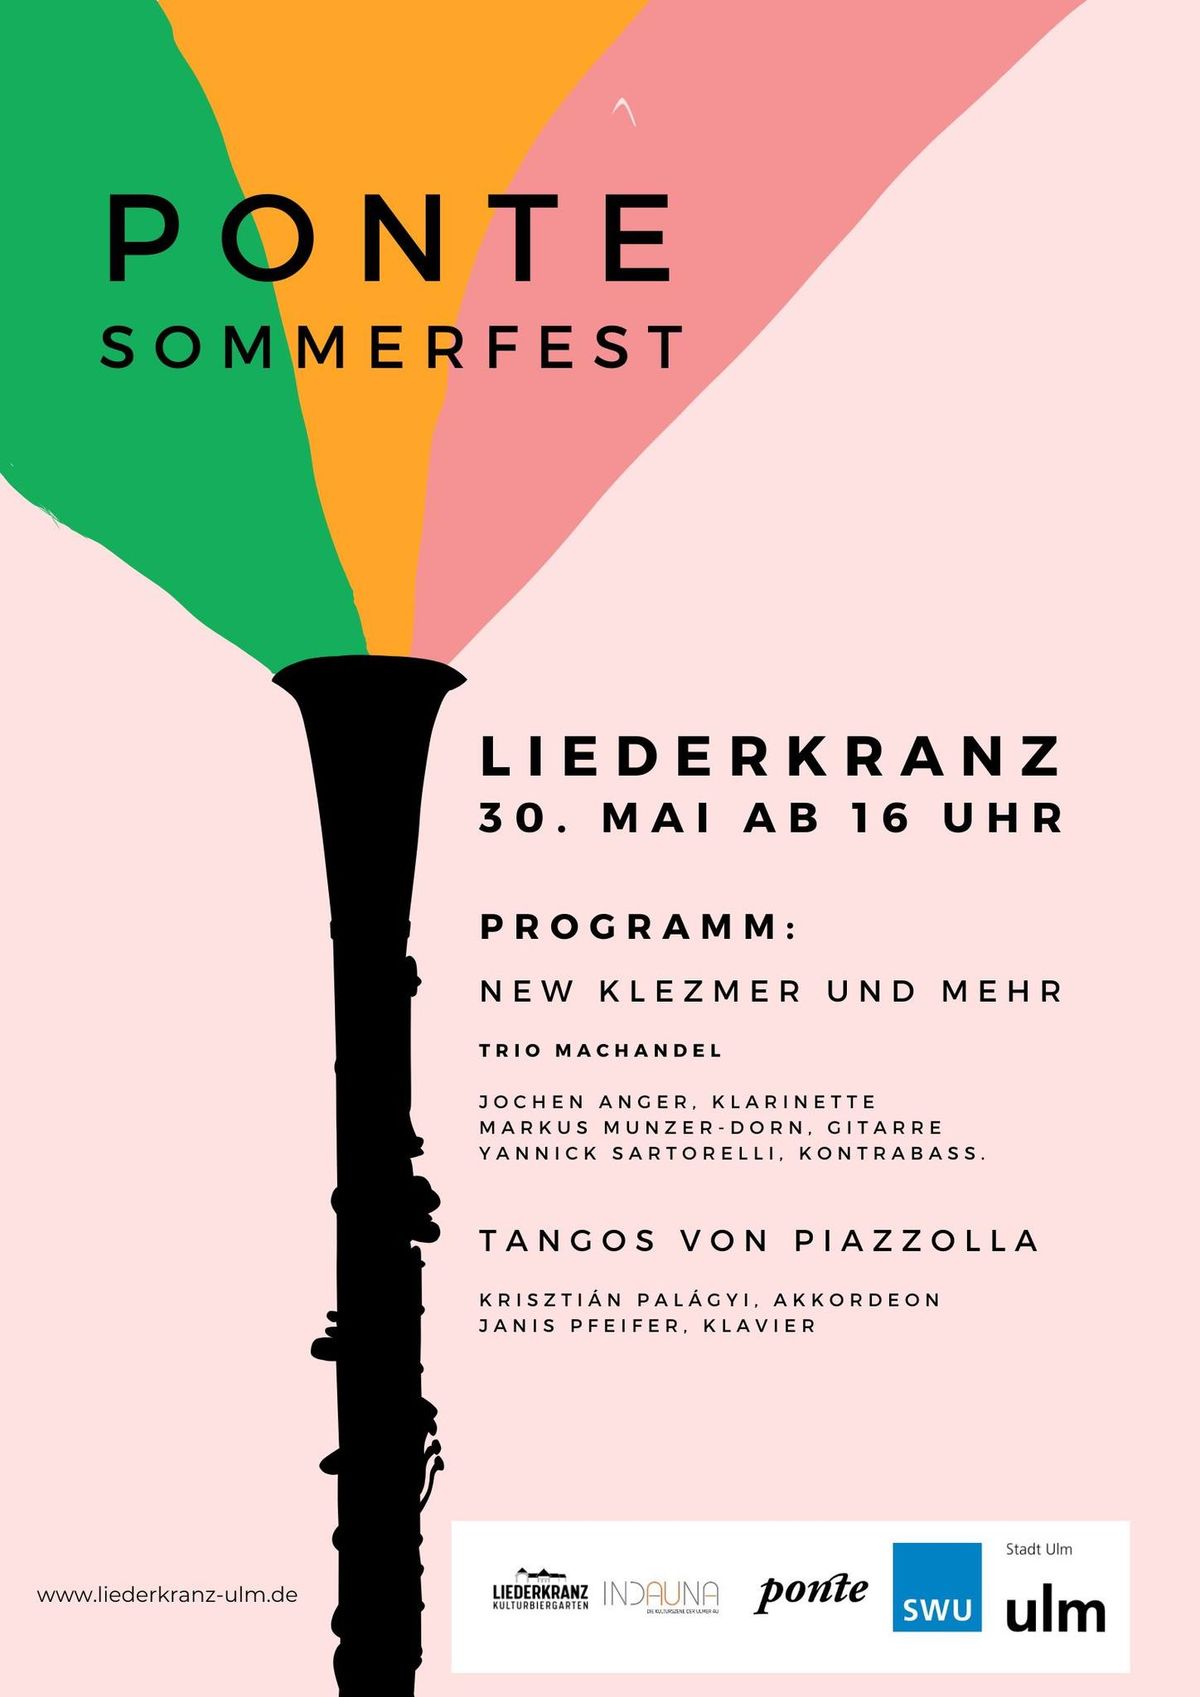 Ponte Sommerfest - New Klezmer und mehr! 